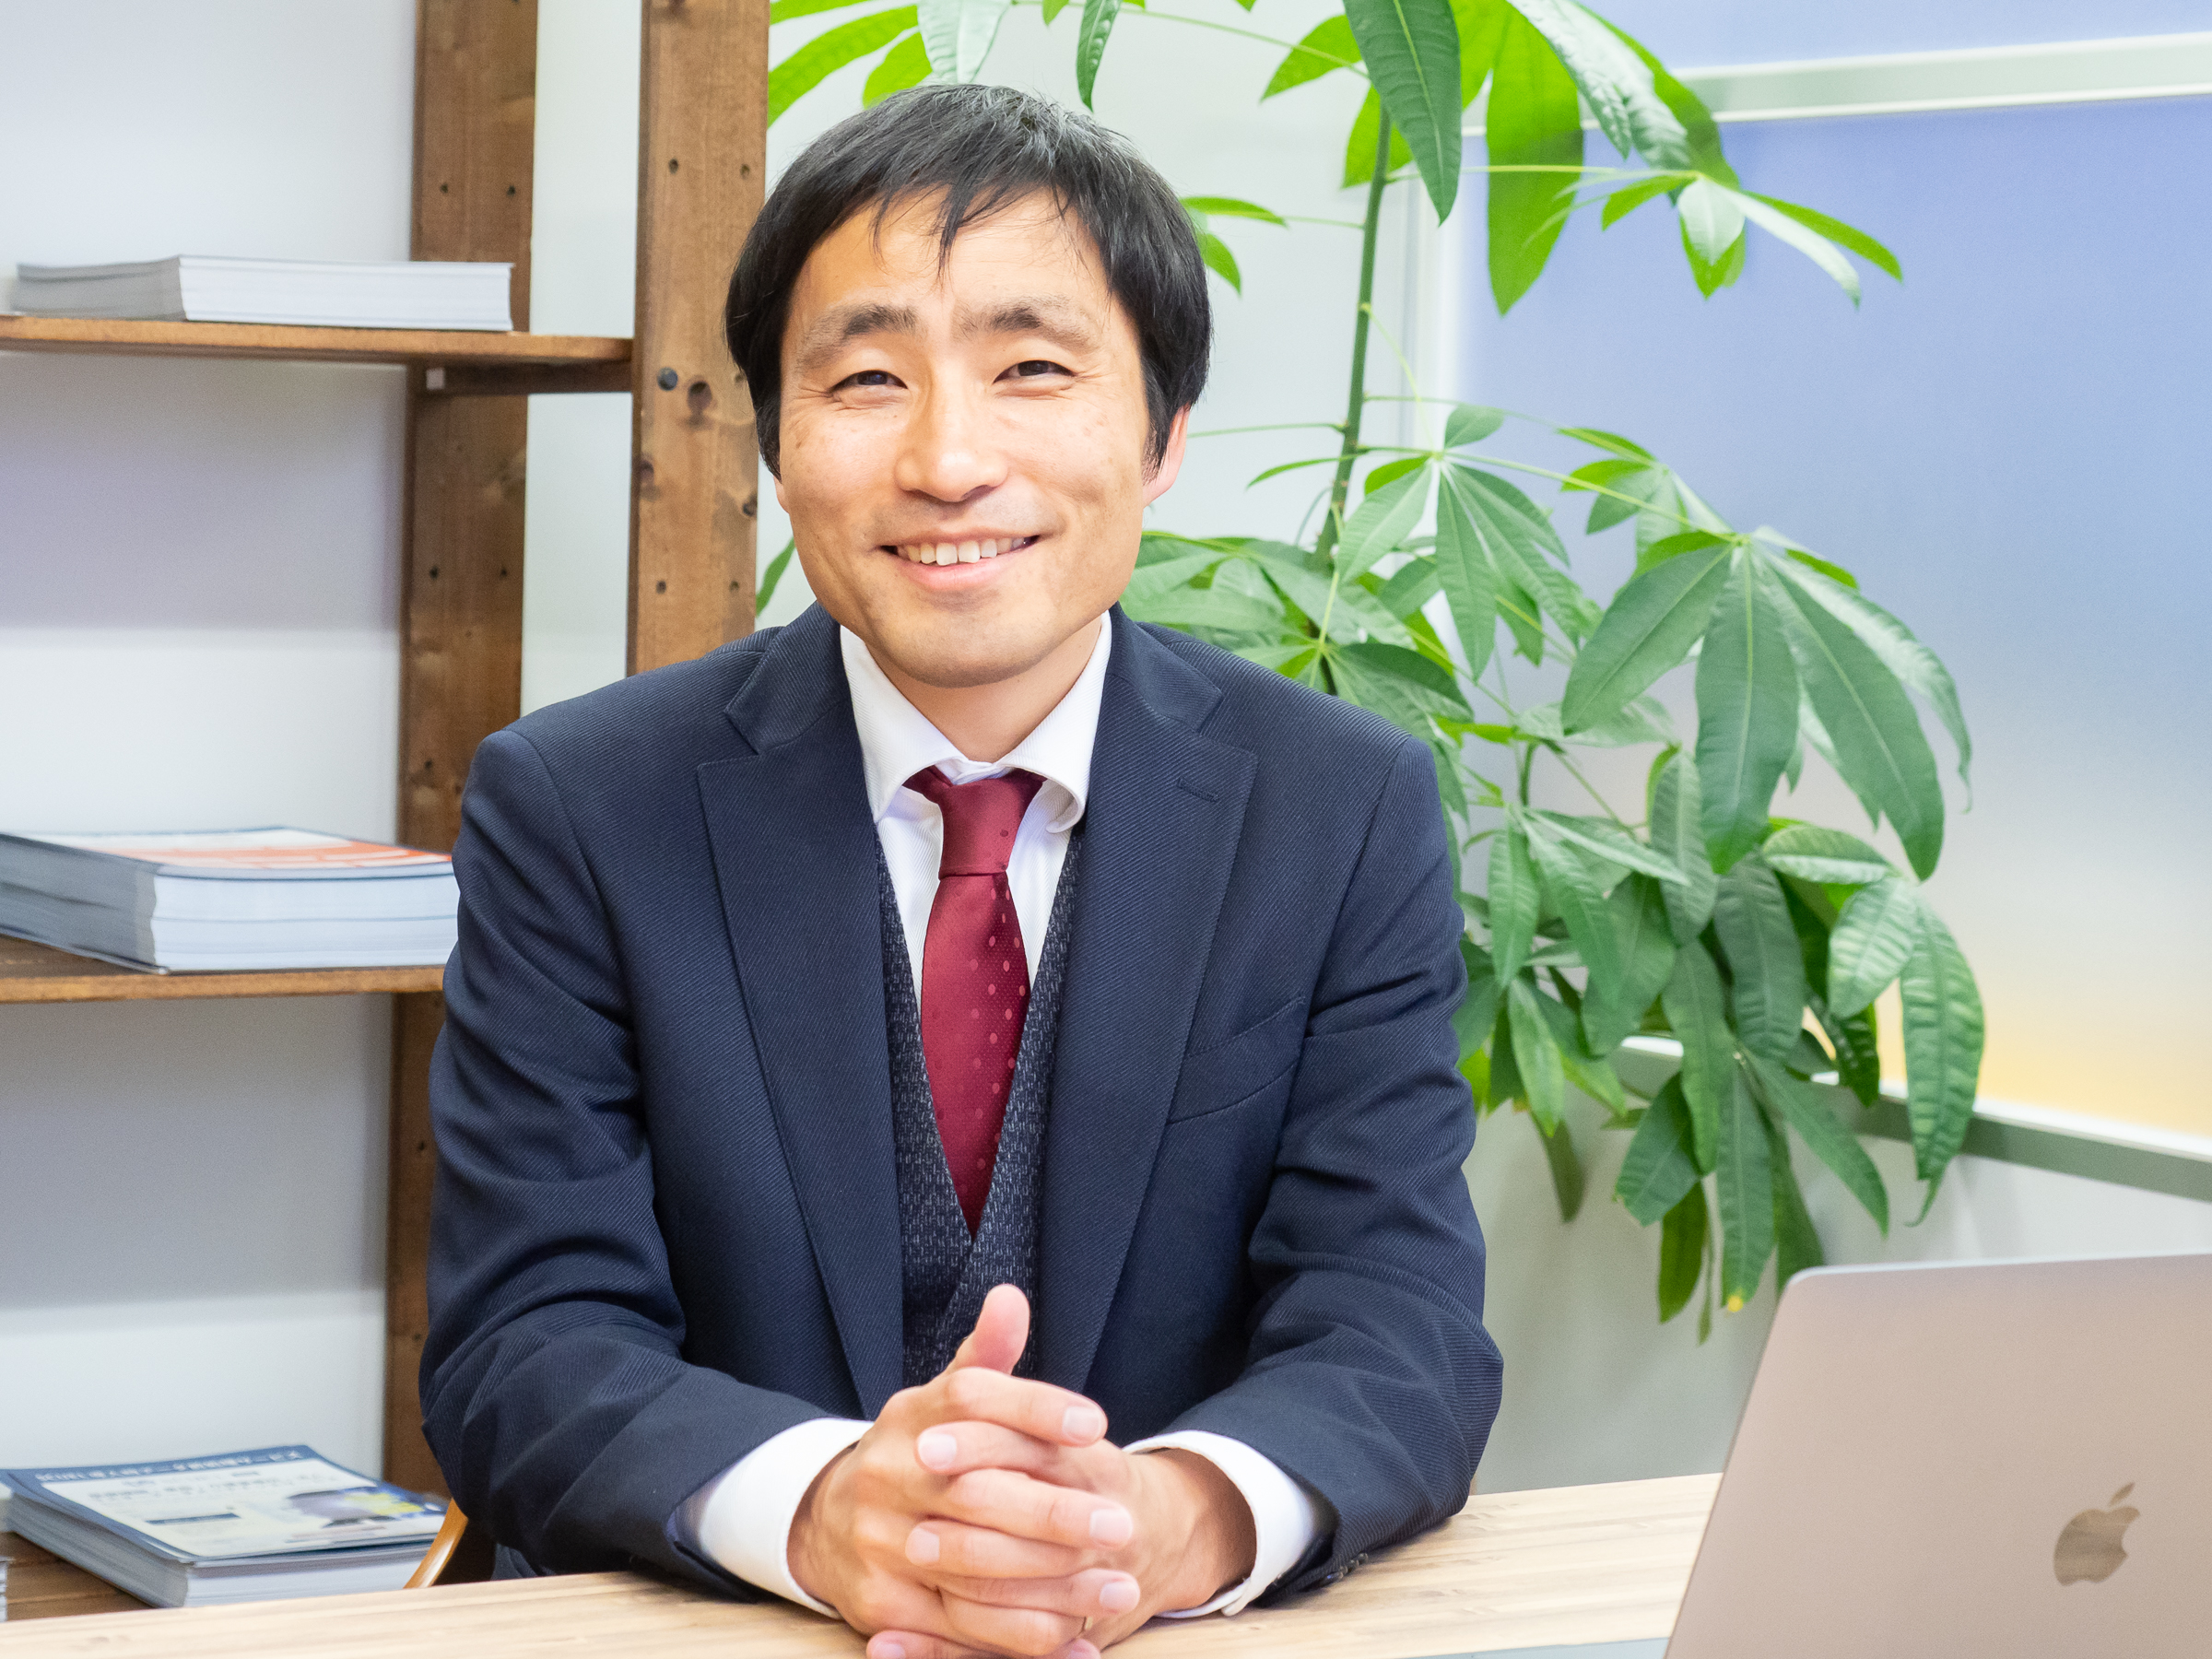 代表取締役　前田 健太郎氏
2010年に同社を設立した後、地道な努力によって同社の成長を牽引。